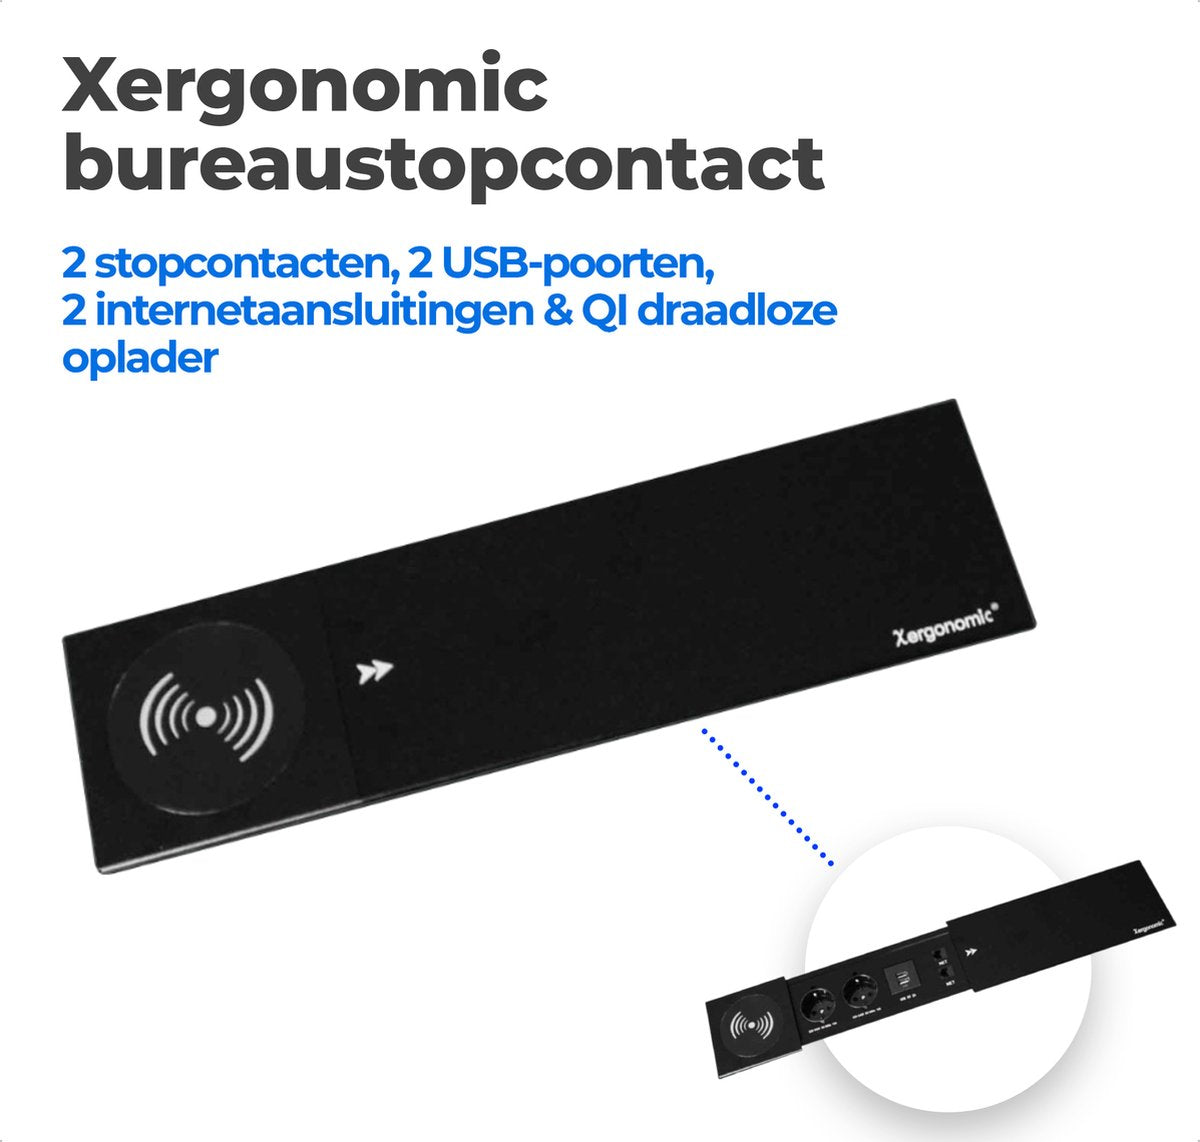 Xergonomic Bureaustopcontact met QI draadloze oplader, 2 internetaansluitingen, 2 stopcontacten en 2 USB-poorten Zwart